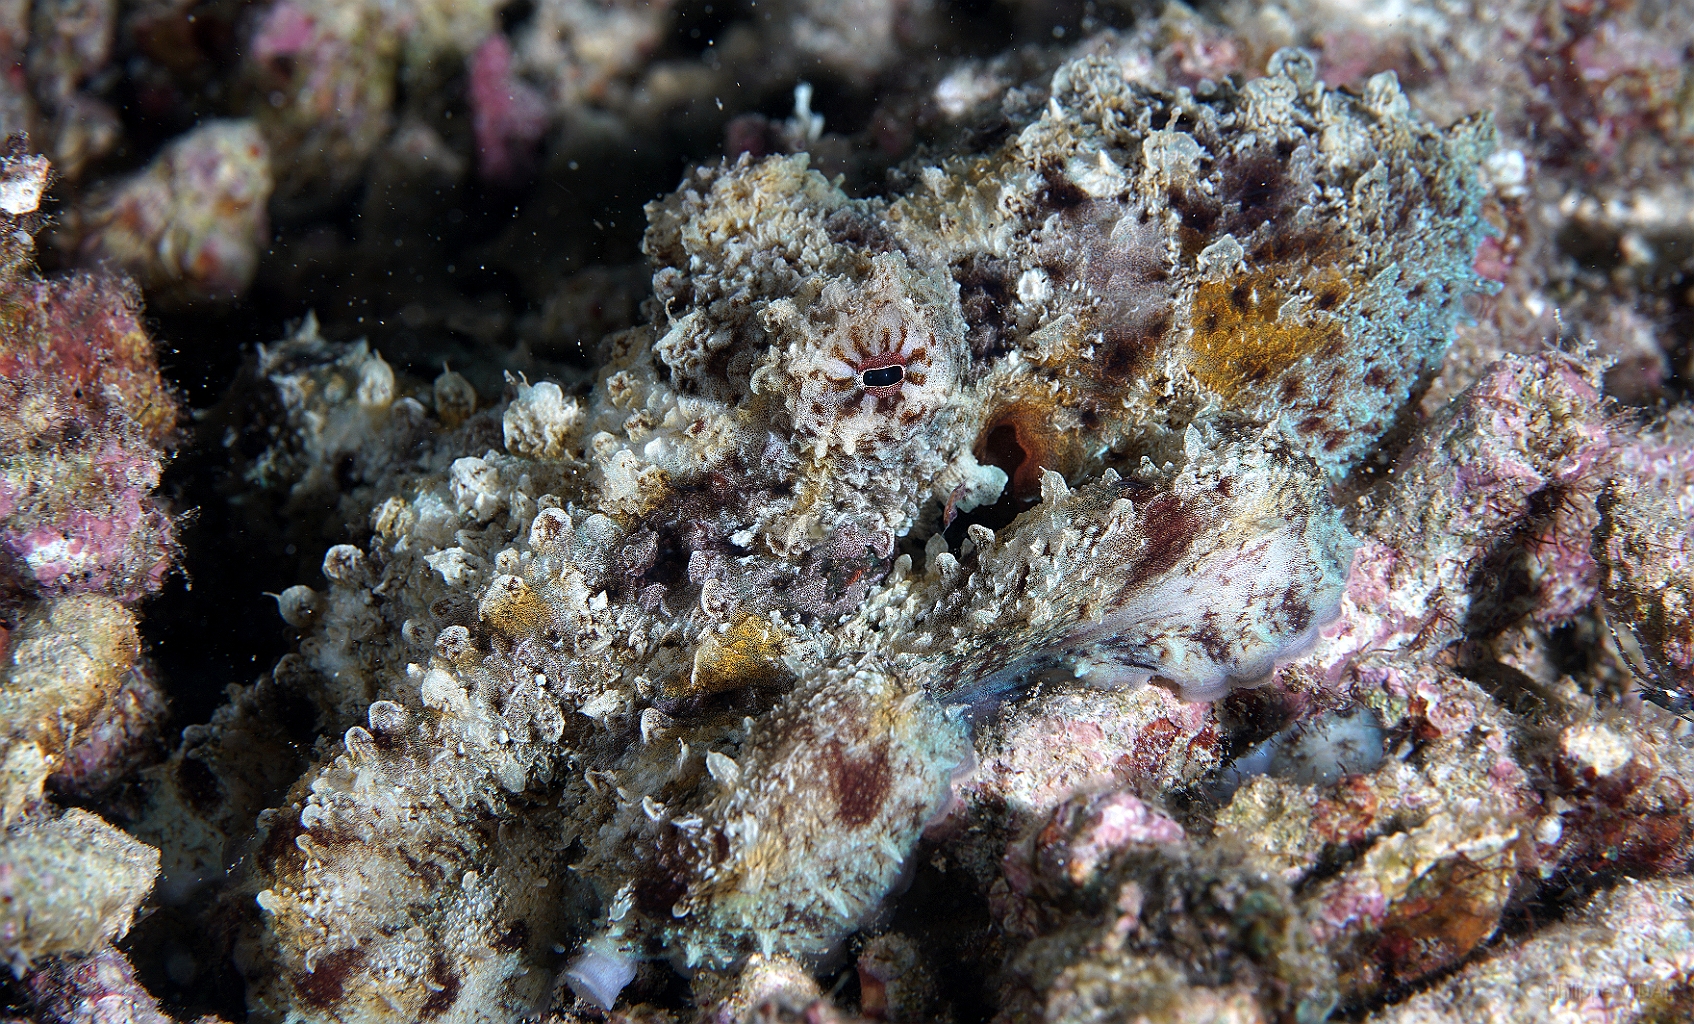 Banda Sea 2018 - DSC05849_rc - Day Octopus - Poulpe - Octopus Cyanea.jpg